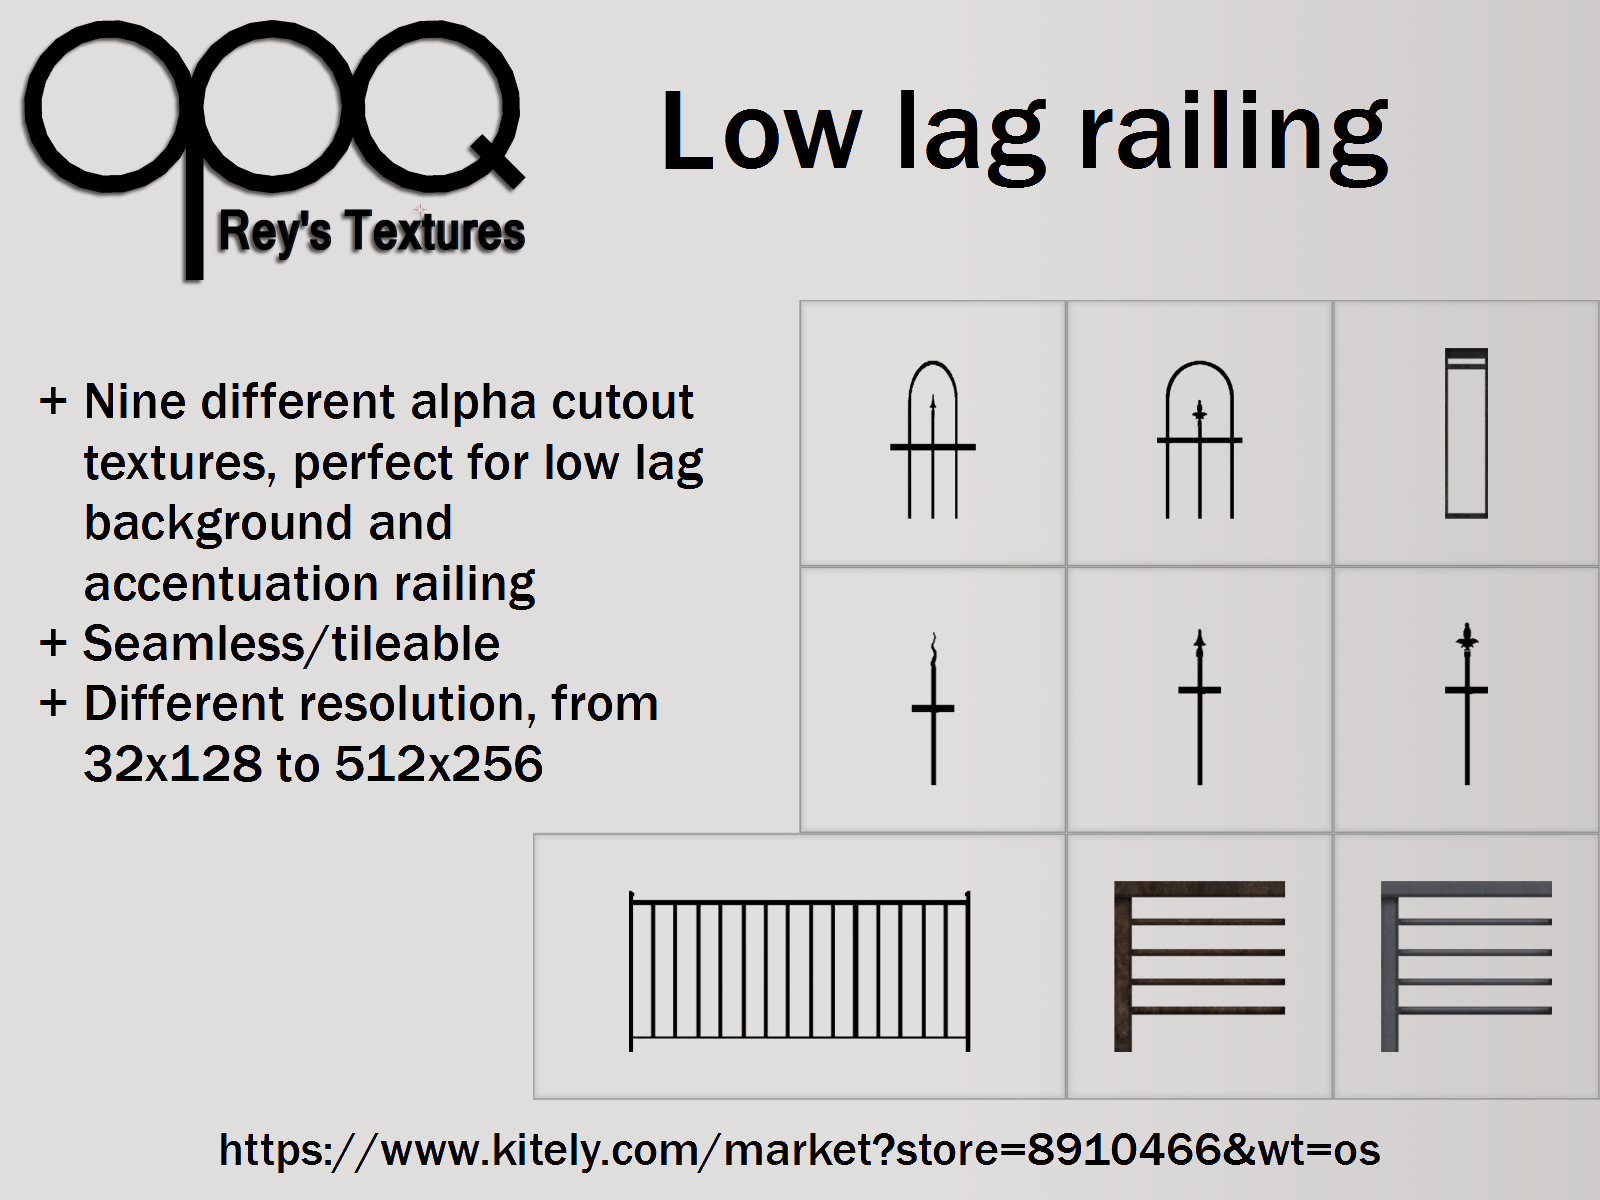 Rey's low lag railing poster Kitely.png